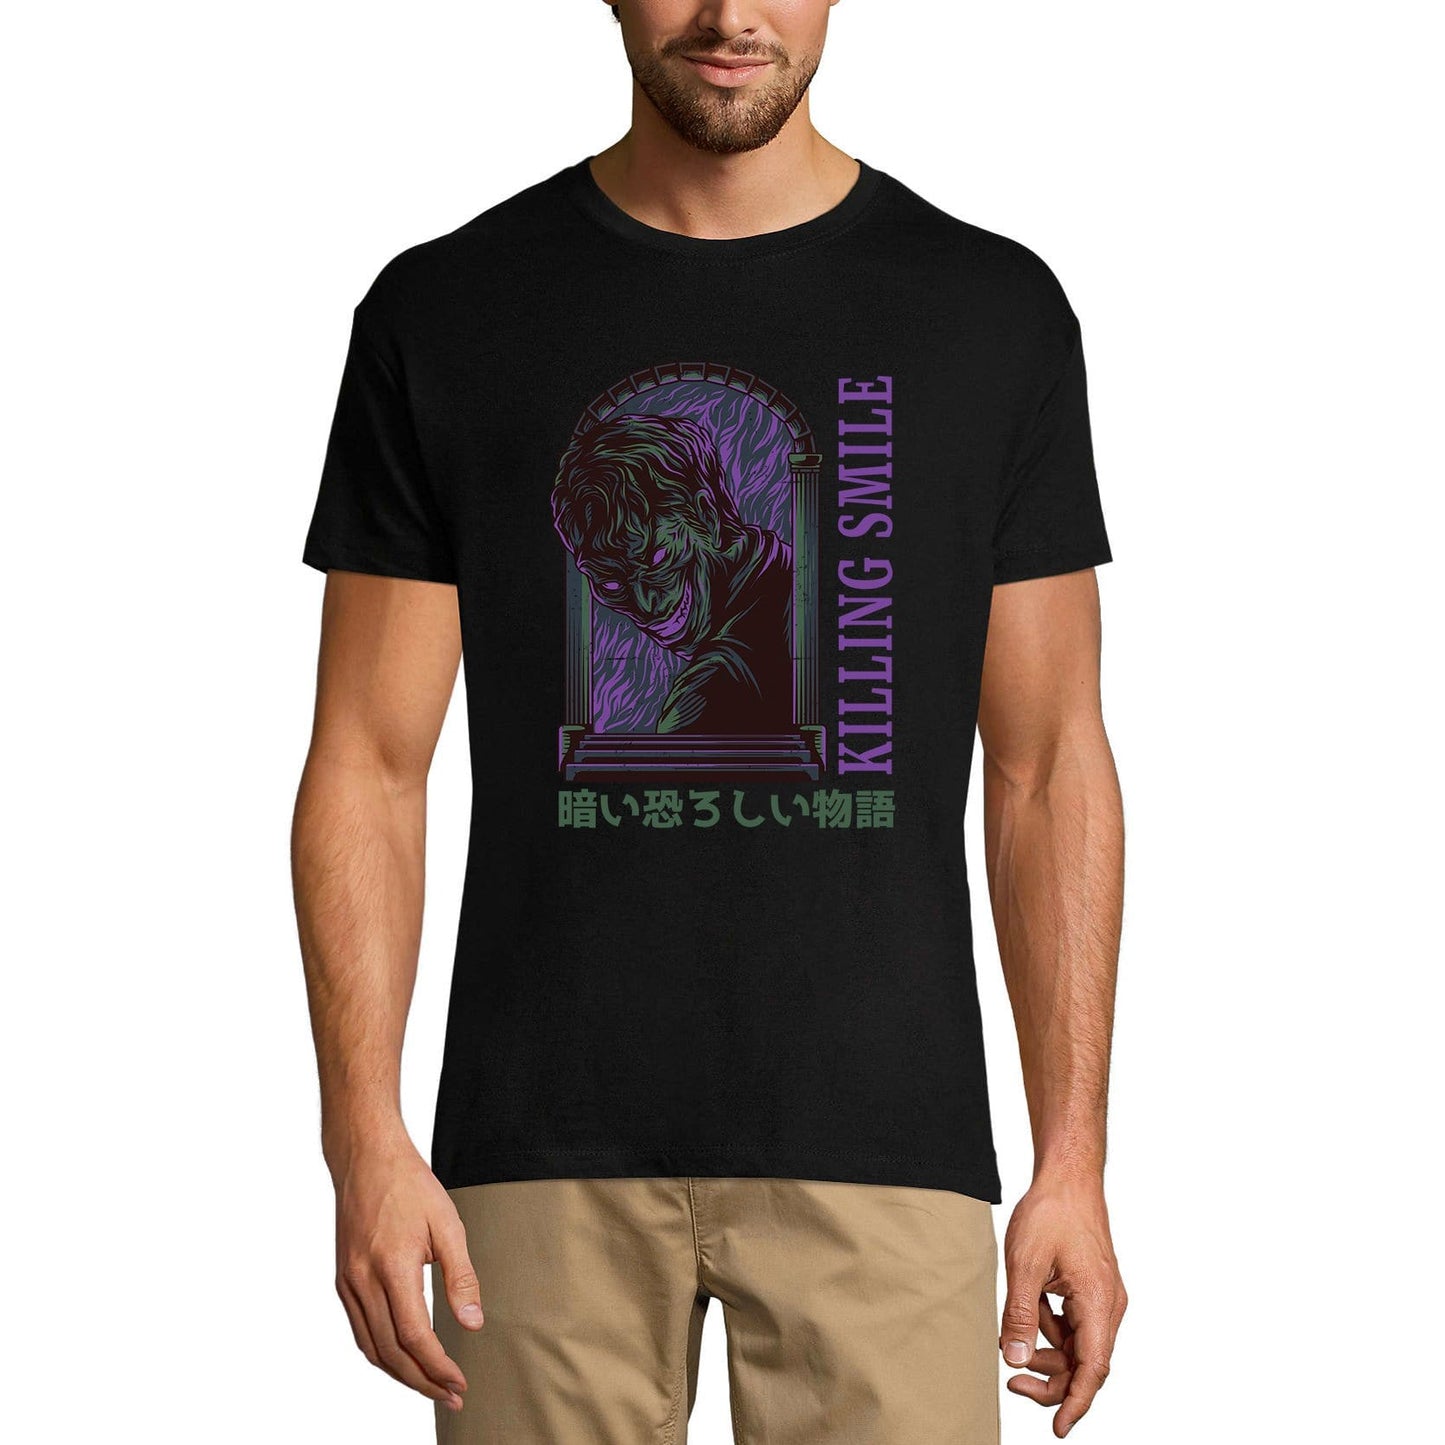 ULTRABASIC Men's Novelty T-Shirt Killing Smile - Scary Short Sleeve Tee Shirt